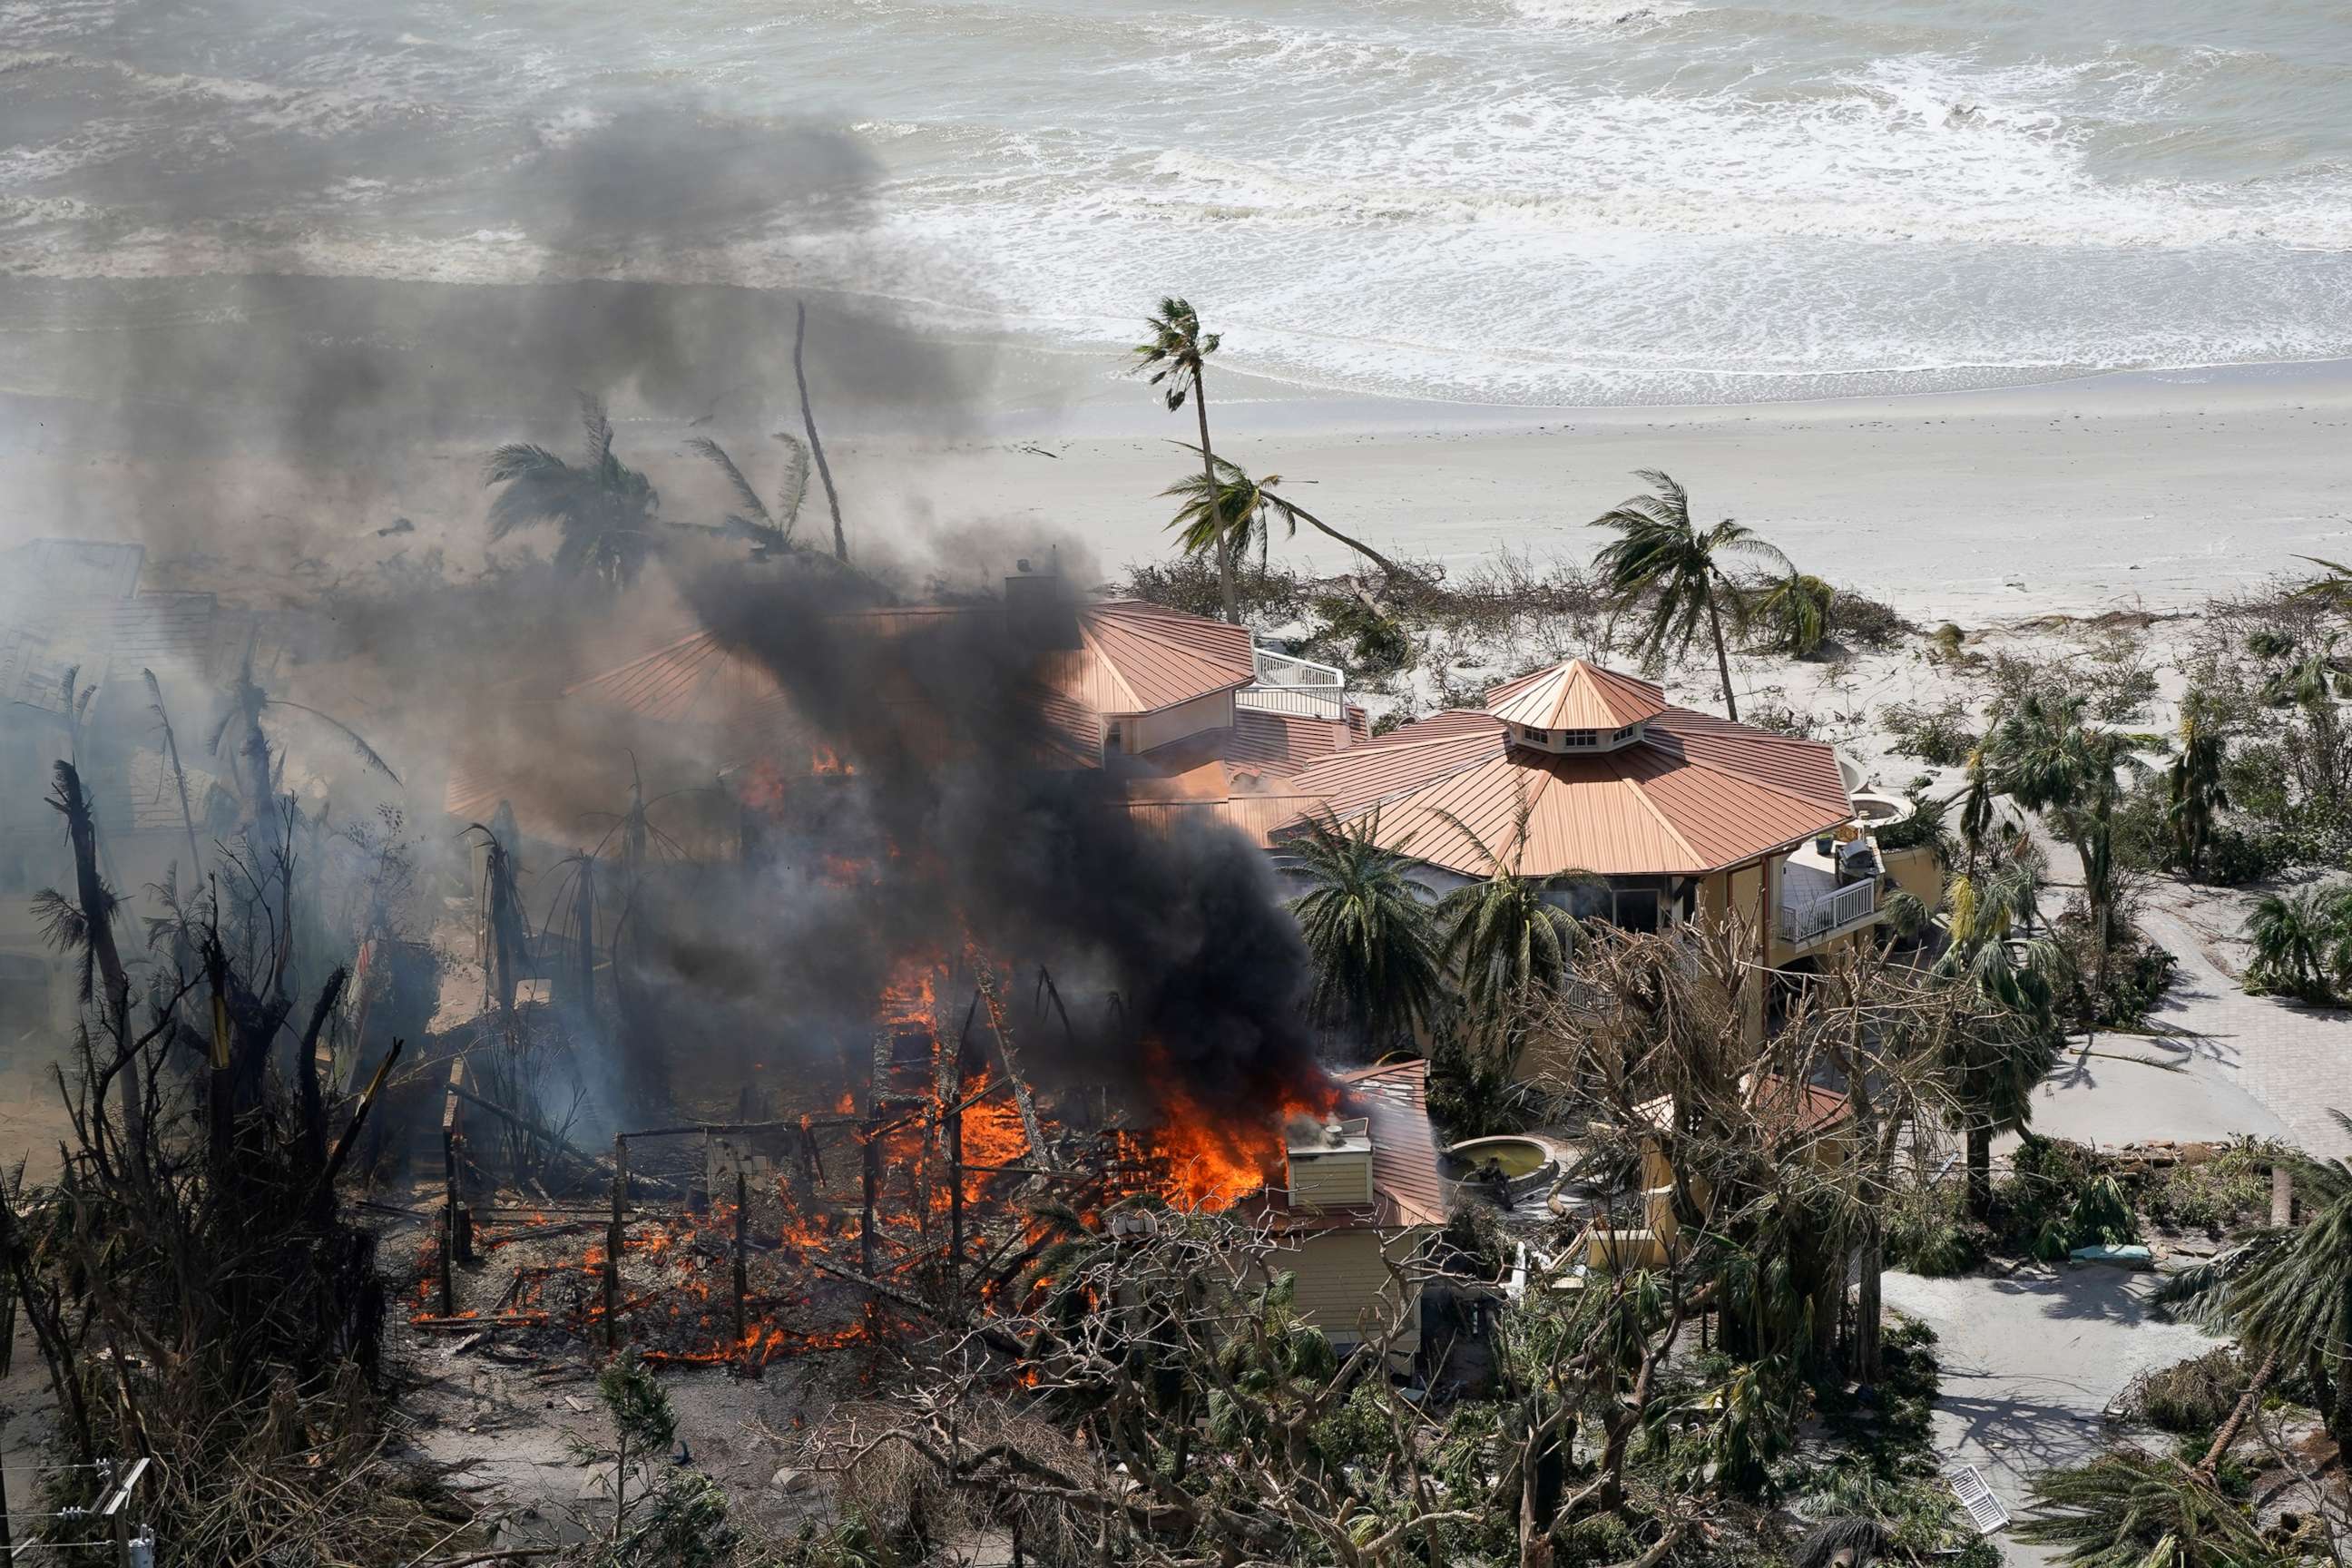 PHOTO: A home burns in the wake of Hurricane Ian on Sanibel Island, Fla., Sept. 29, 2022.